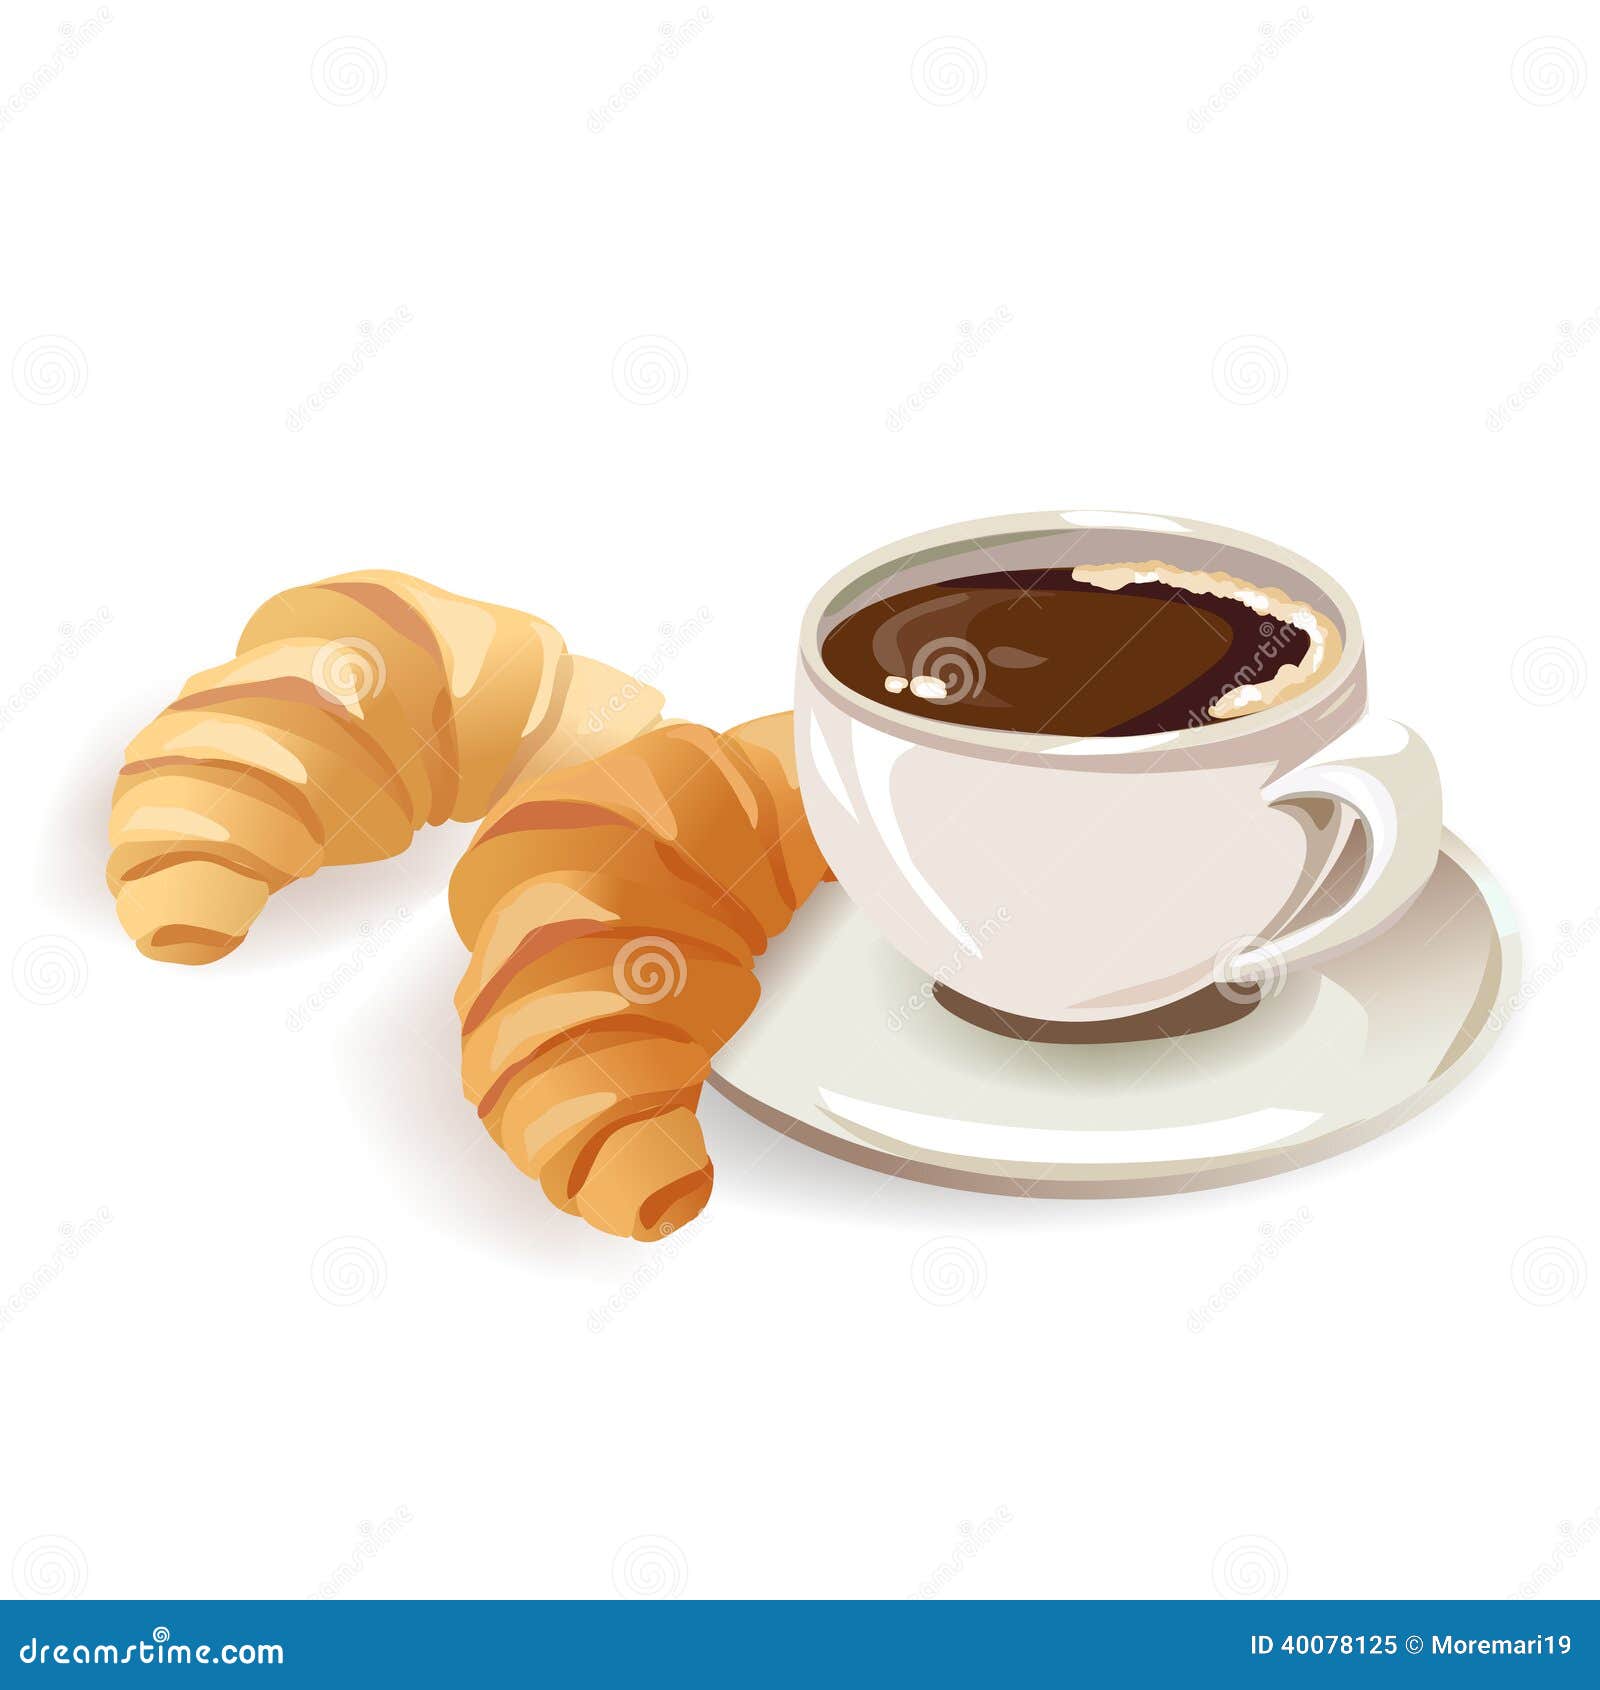 clipart caf�� croissant - photo #10